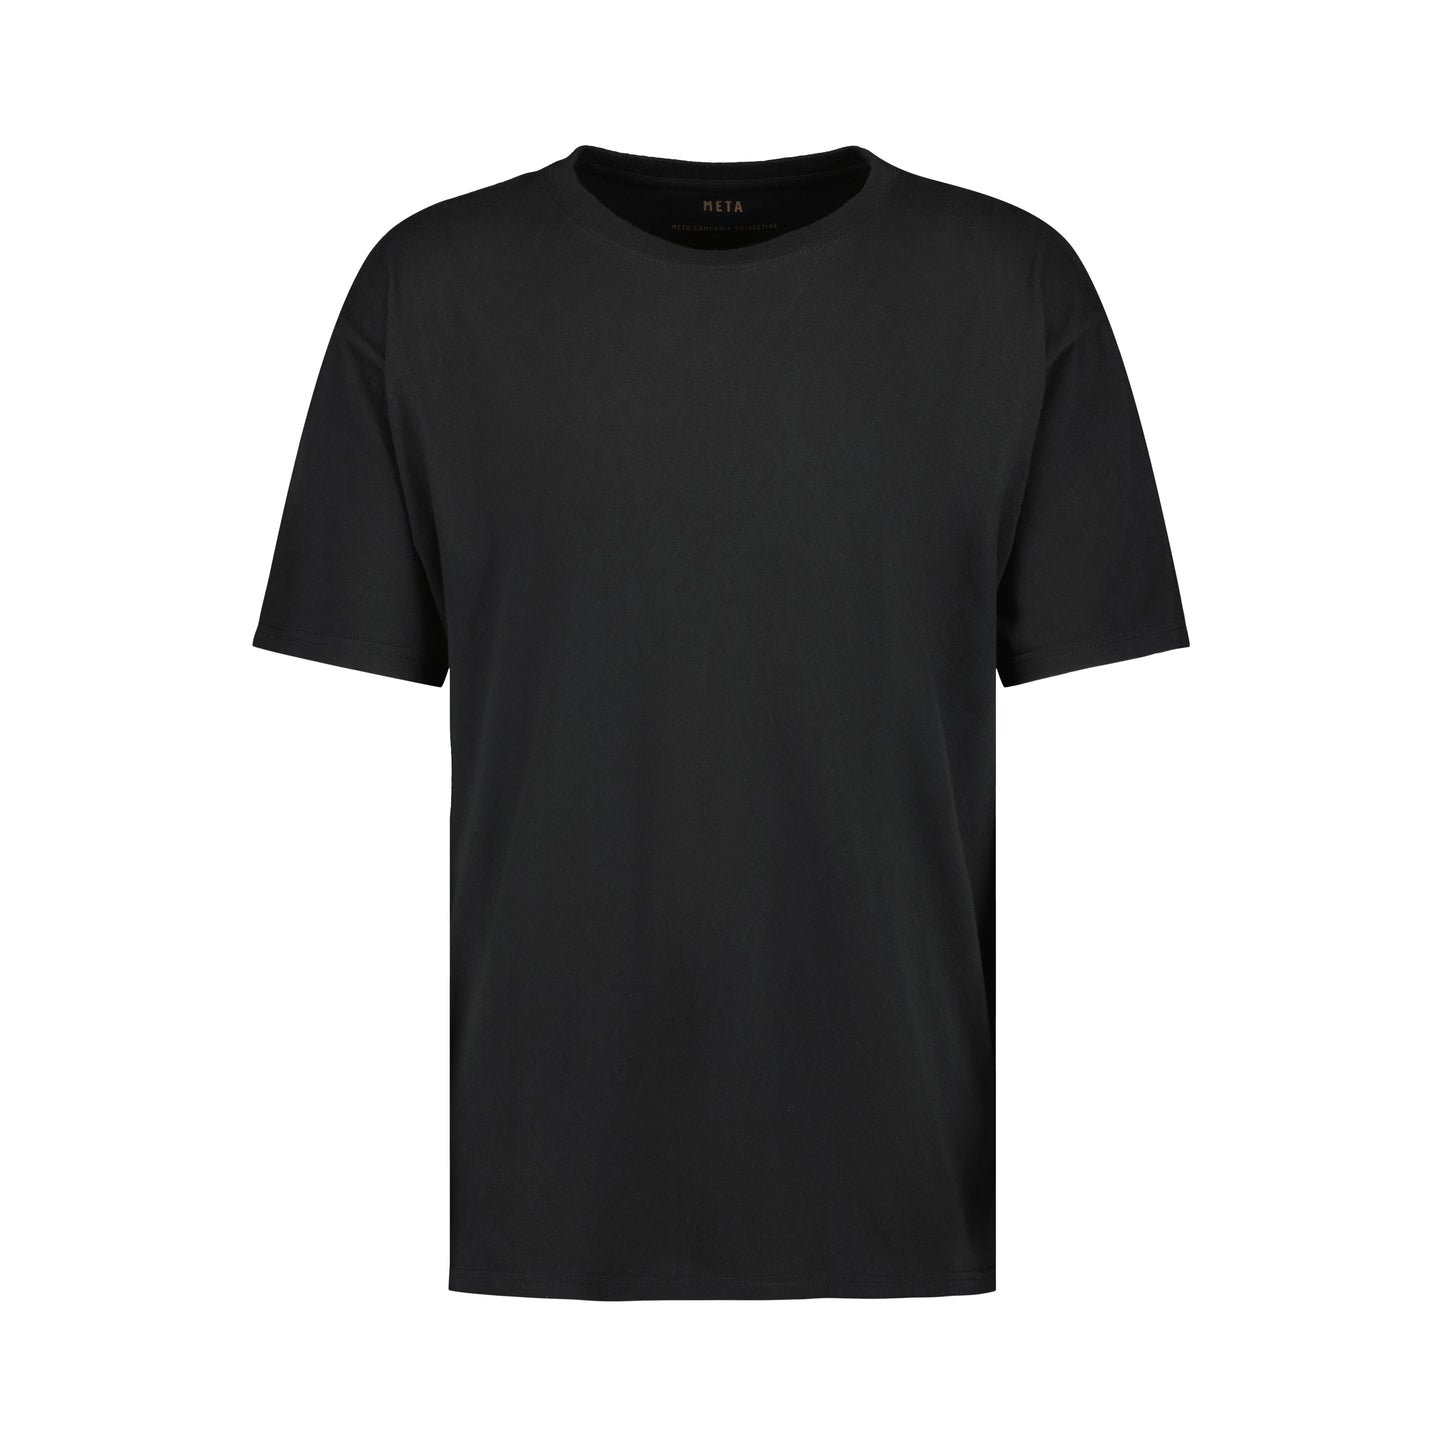 Peter Jersey Cotton T Shirt Black